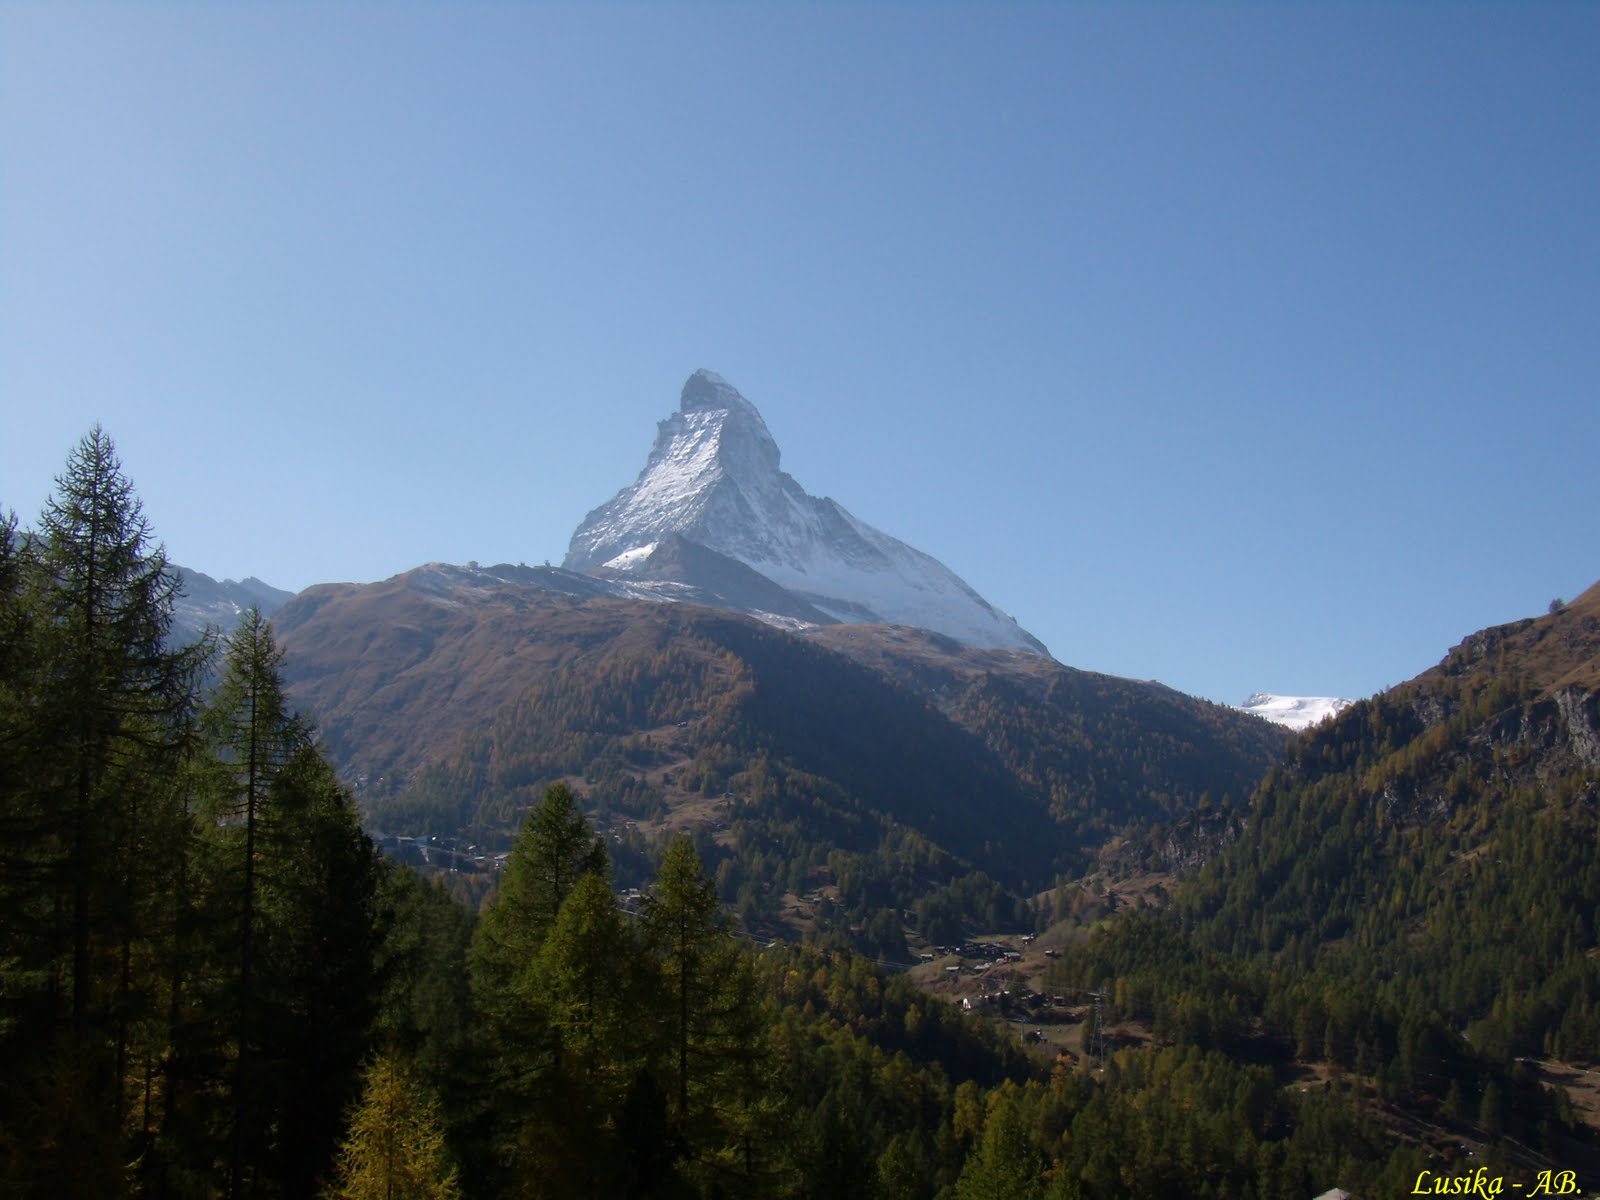 [Matterhorn.jpg]